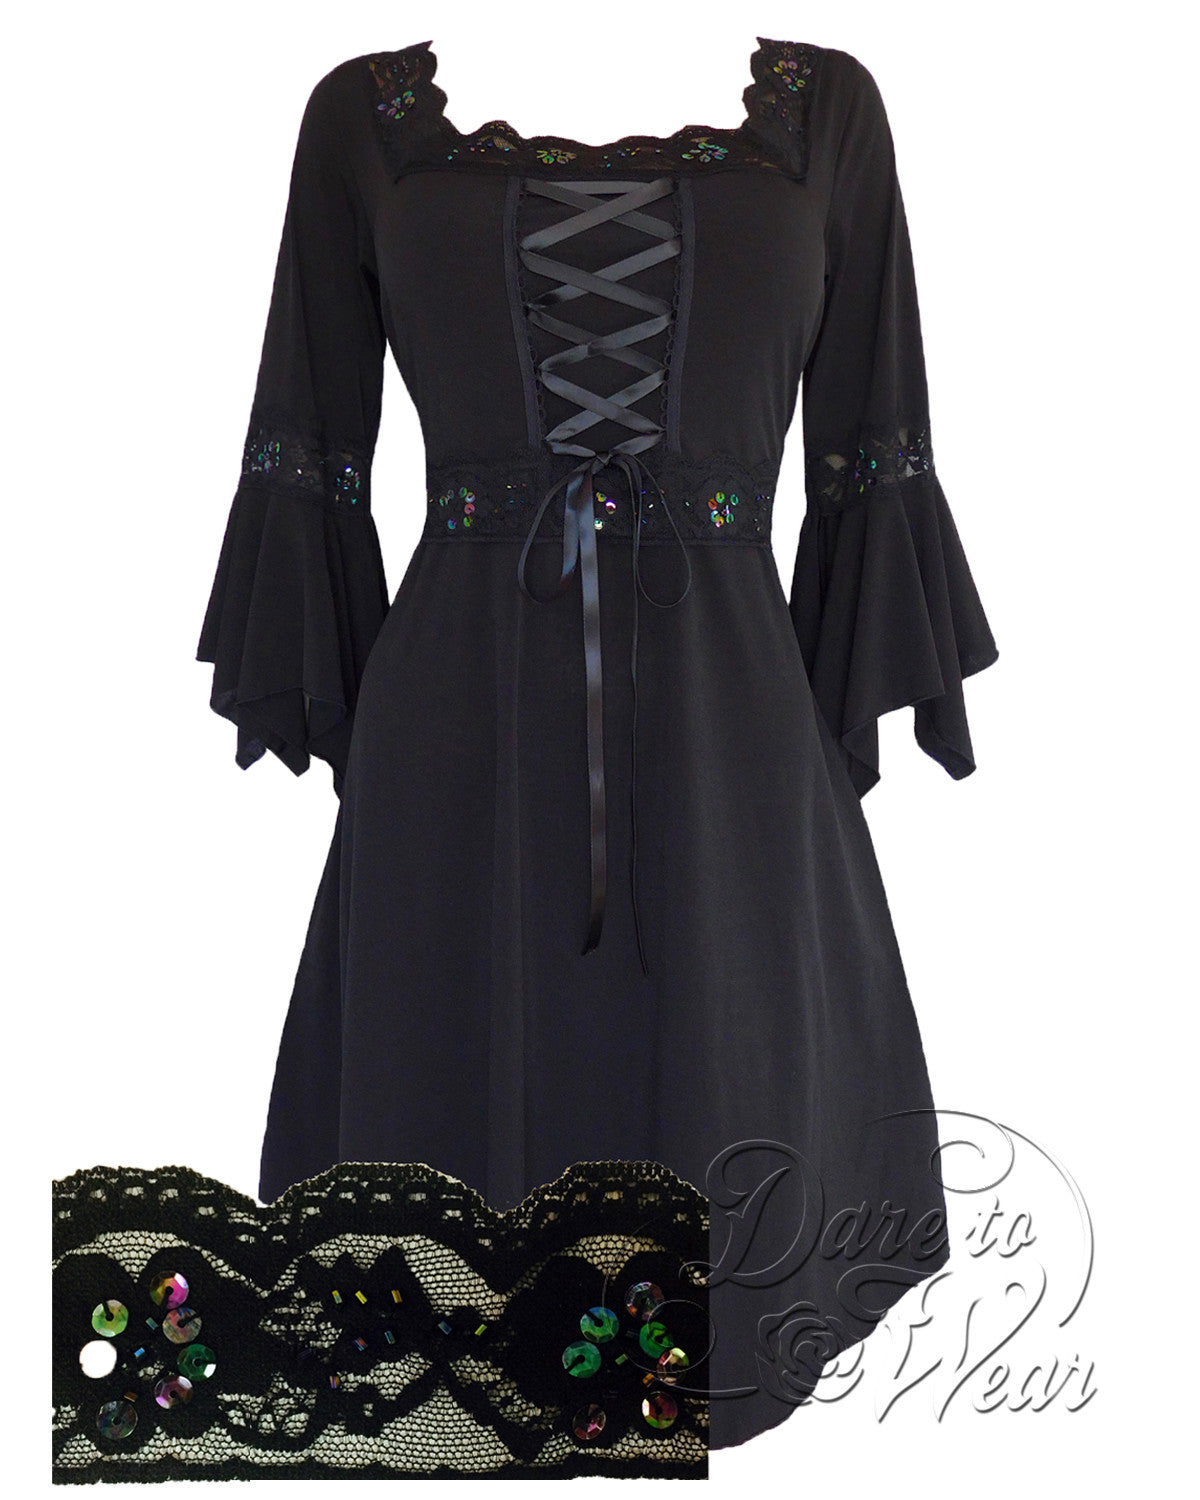 Renaissance Dress in Black  Dark Raven Victorian Gothic Corset